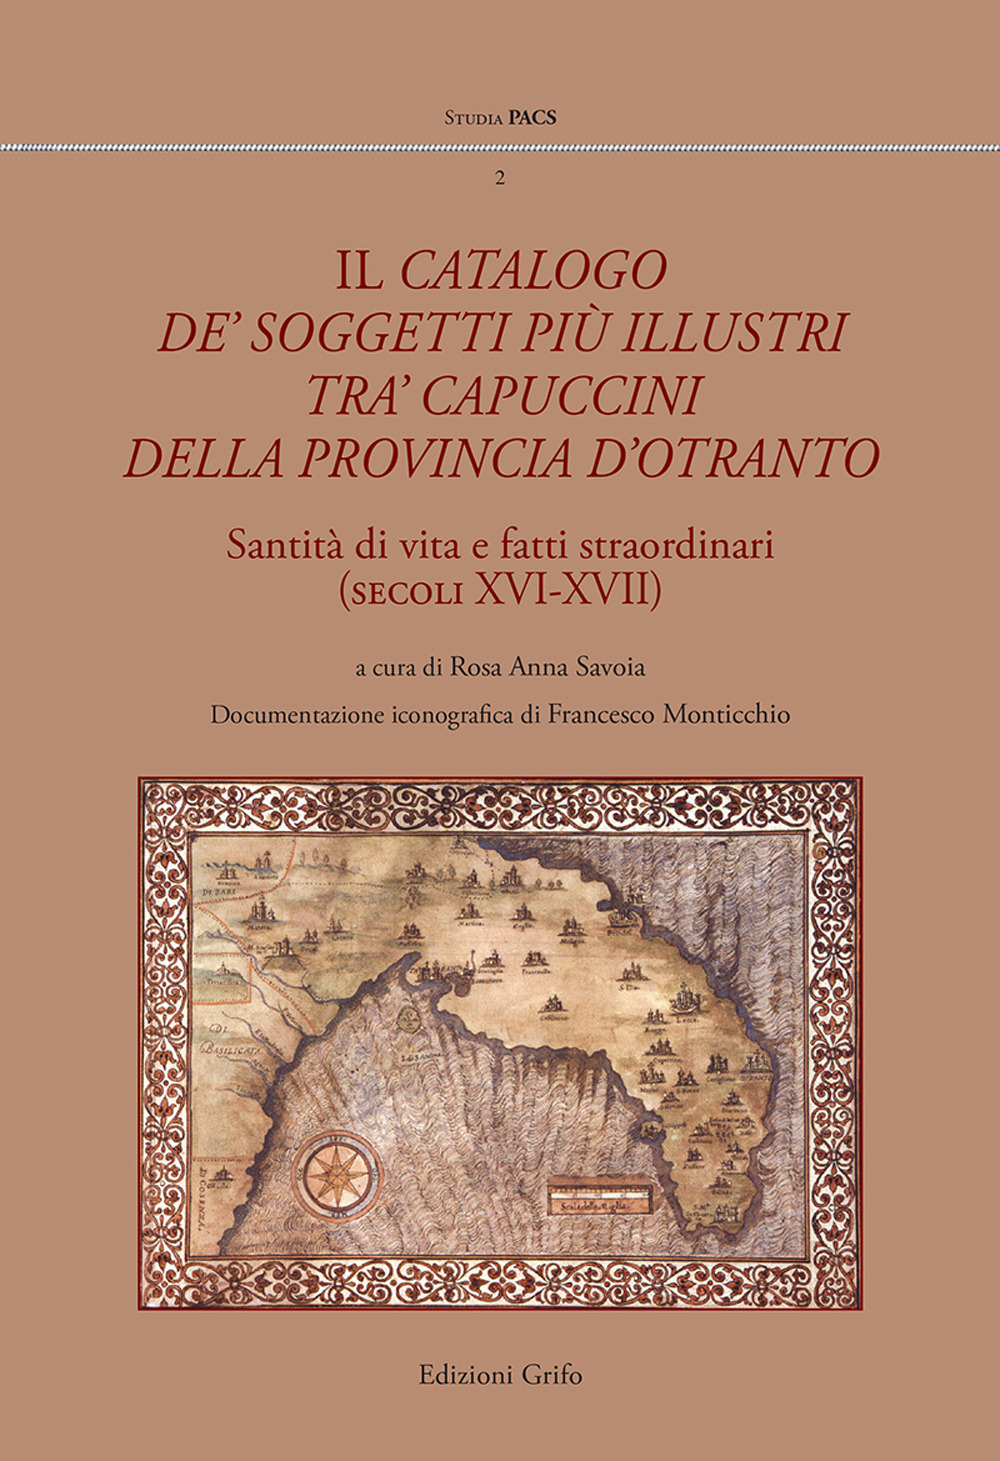 Il catalogo de' soggetti più illustri tra' capuccini della provincia d'Otranto. Santità di vita e fati straordinari (secoli XVI-XVII)